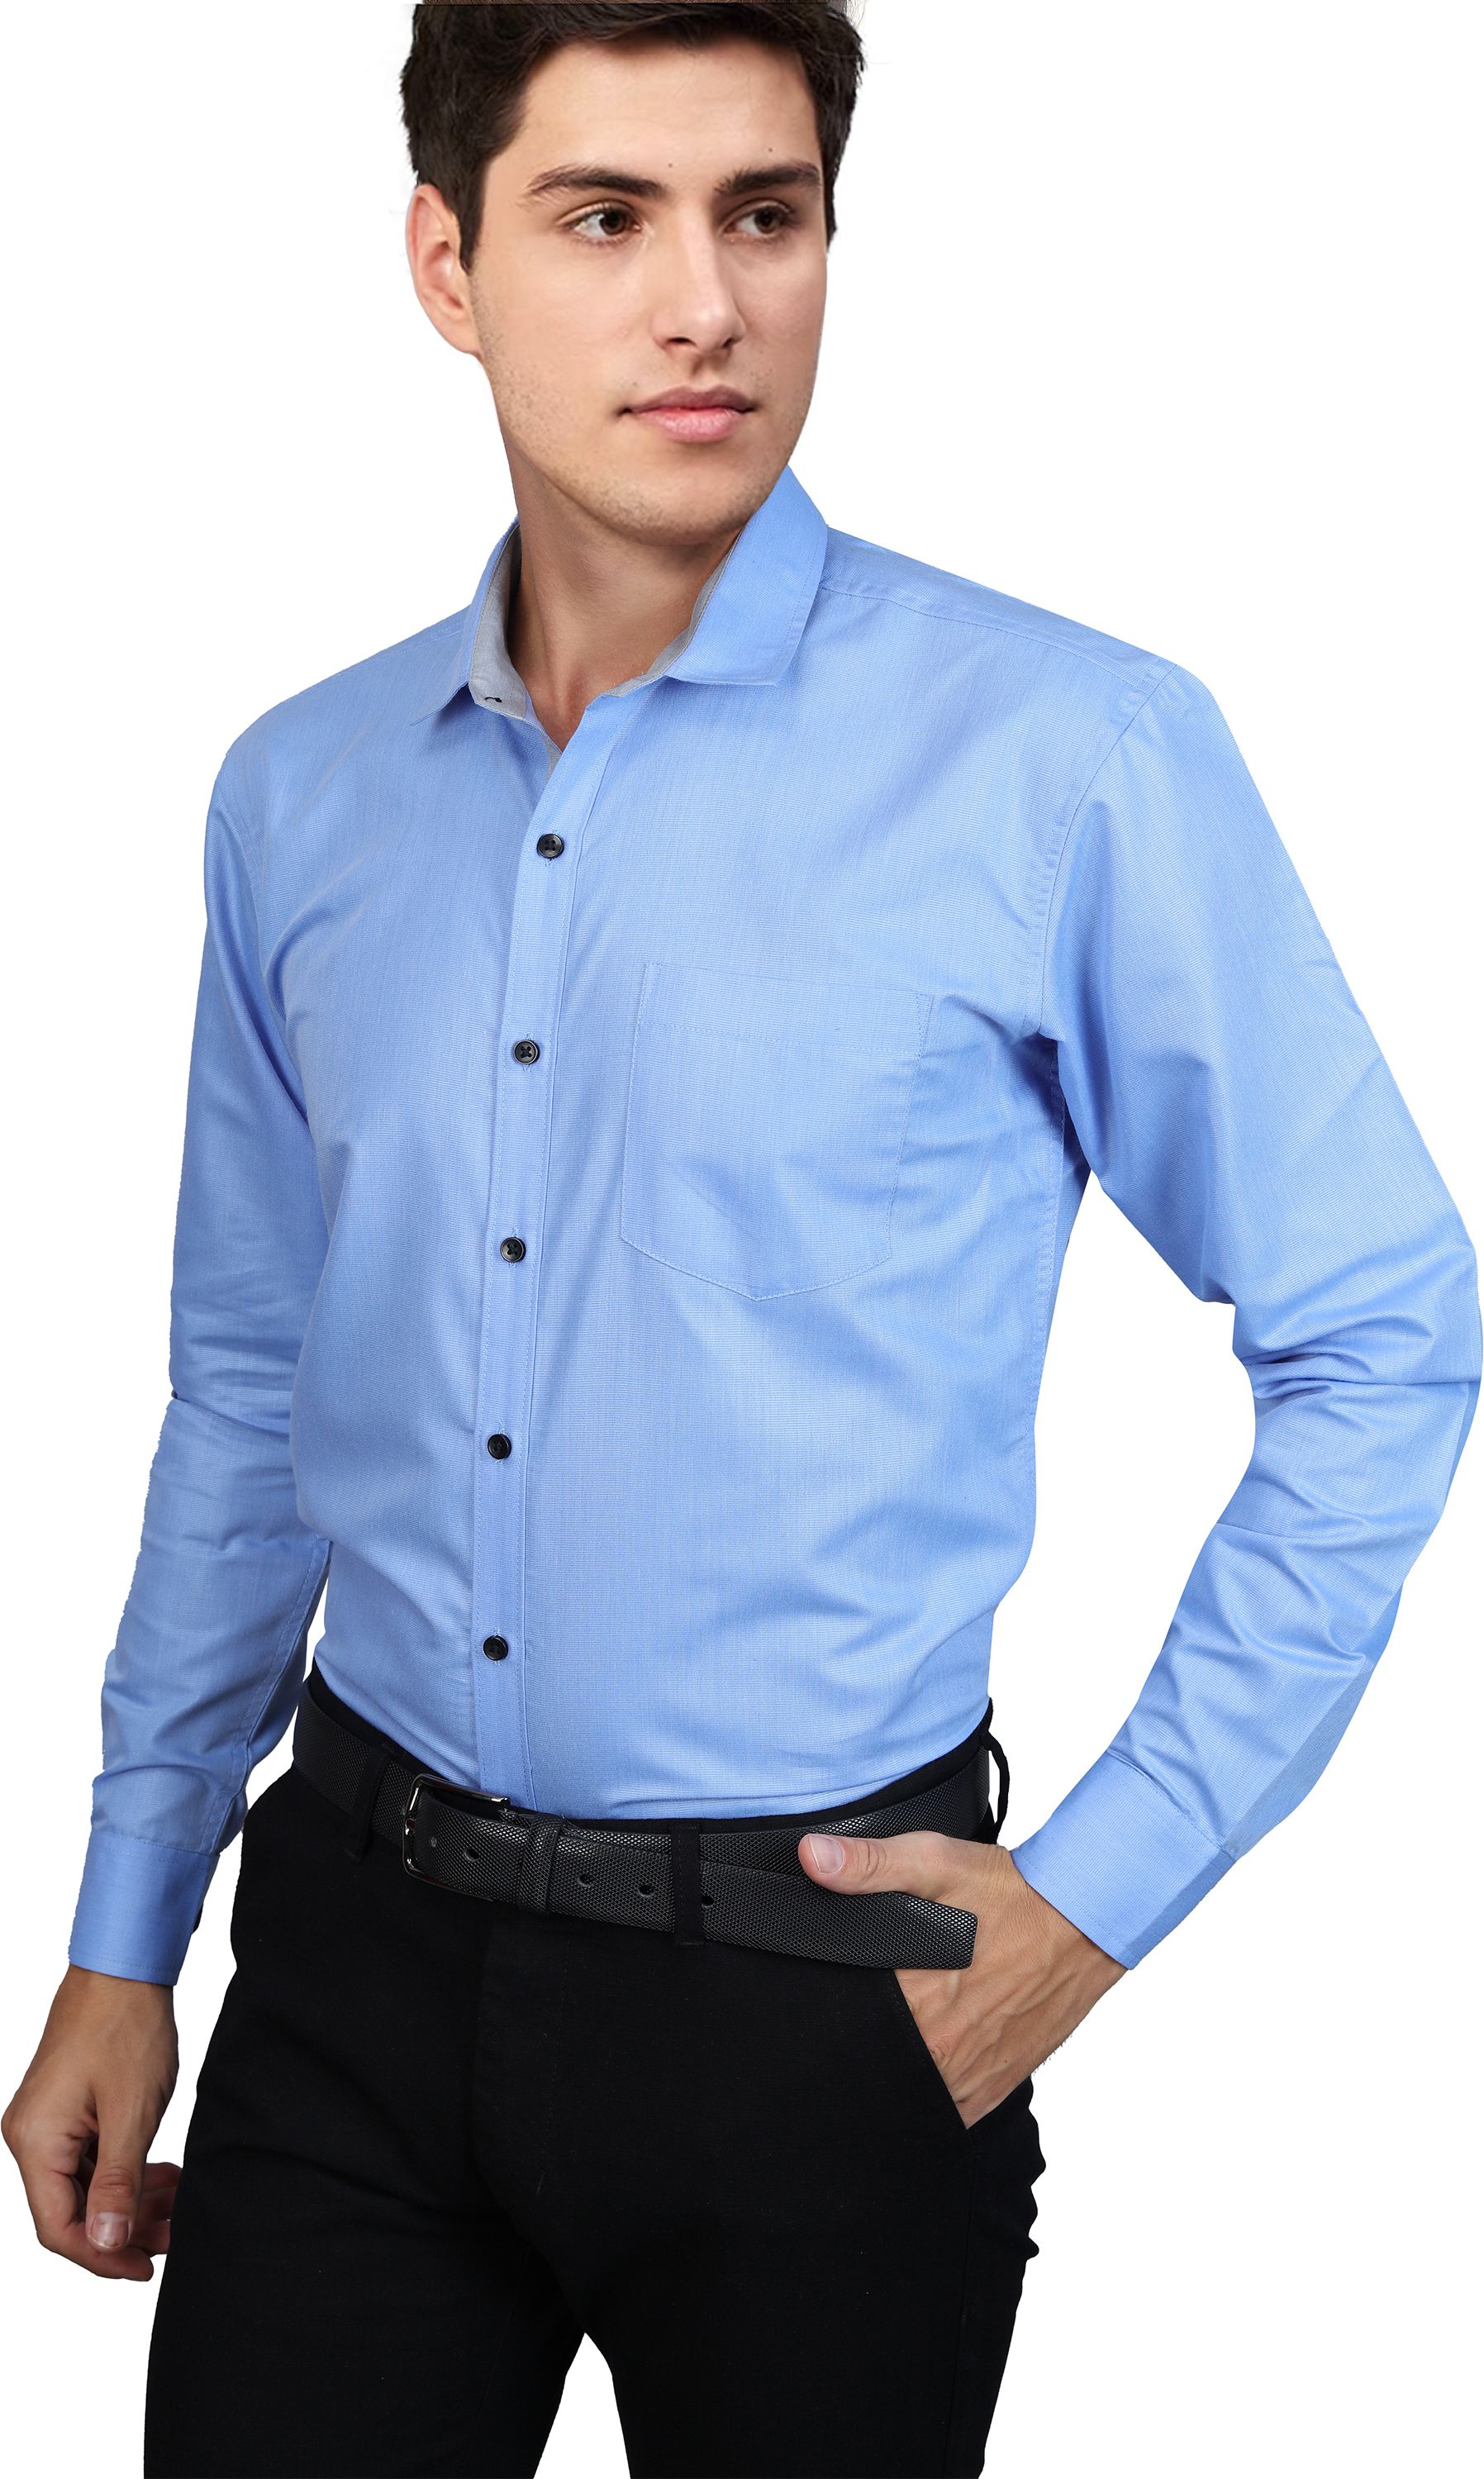     			Supersquad Cotton Blend Regular Fit Full Sleeves Men's Formal Shirt - Light Blue ( Pack of 1 )